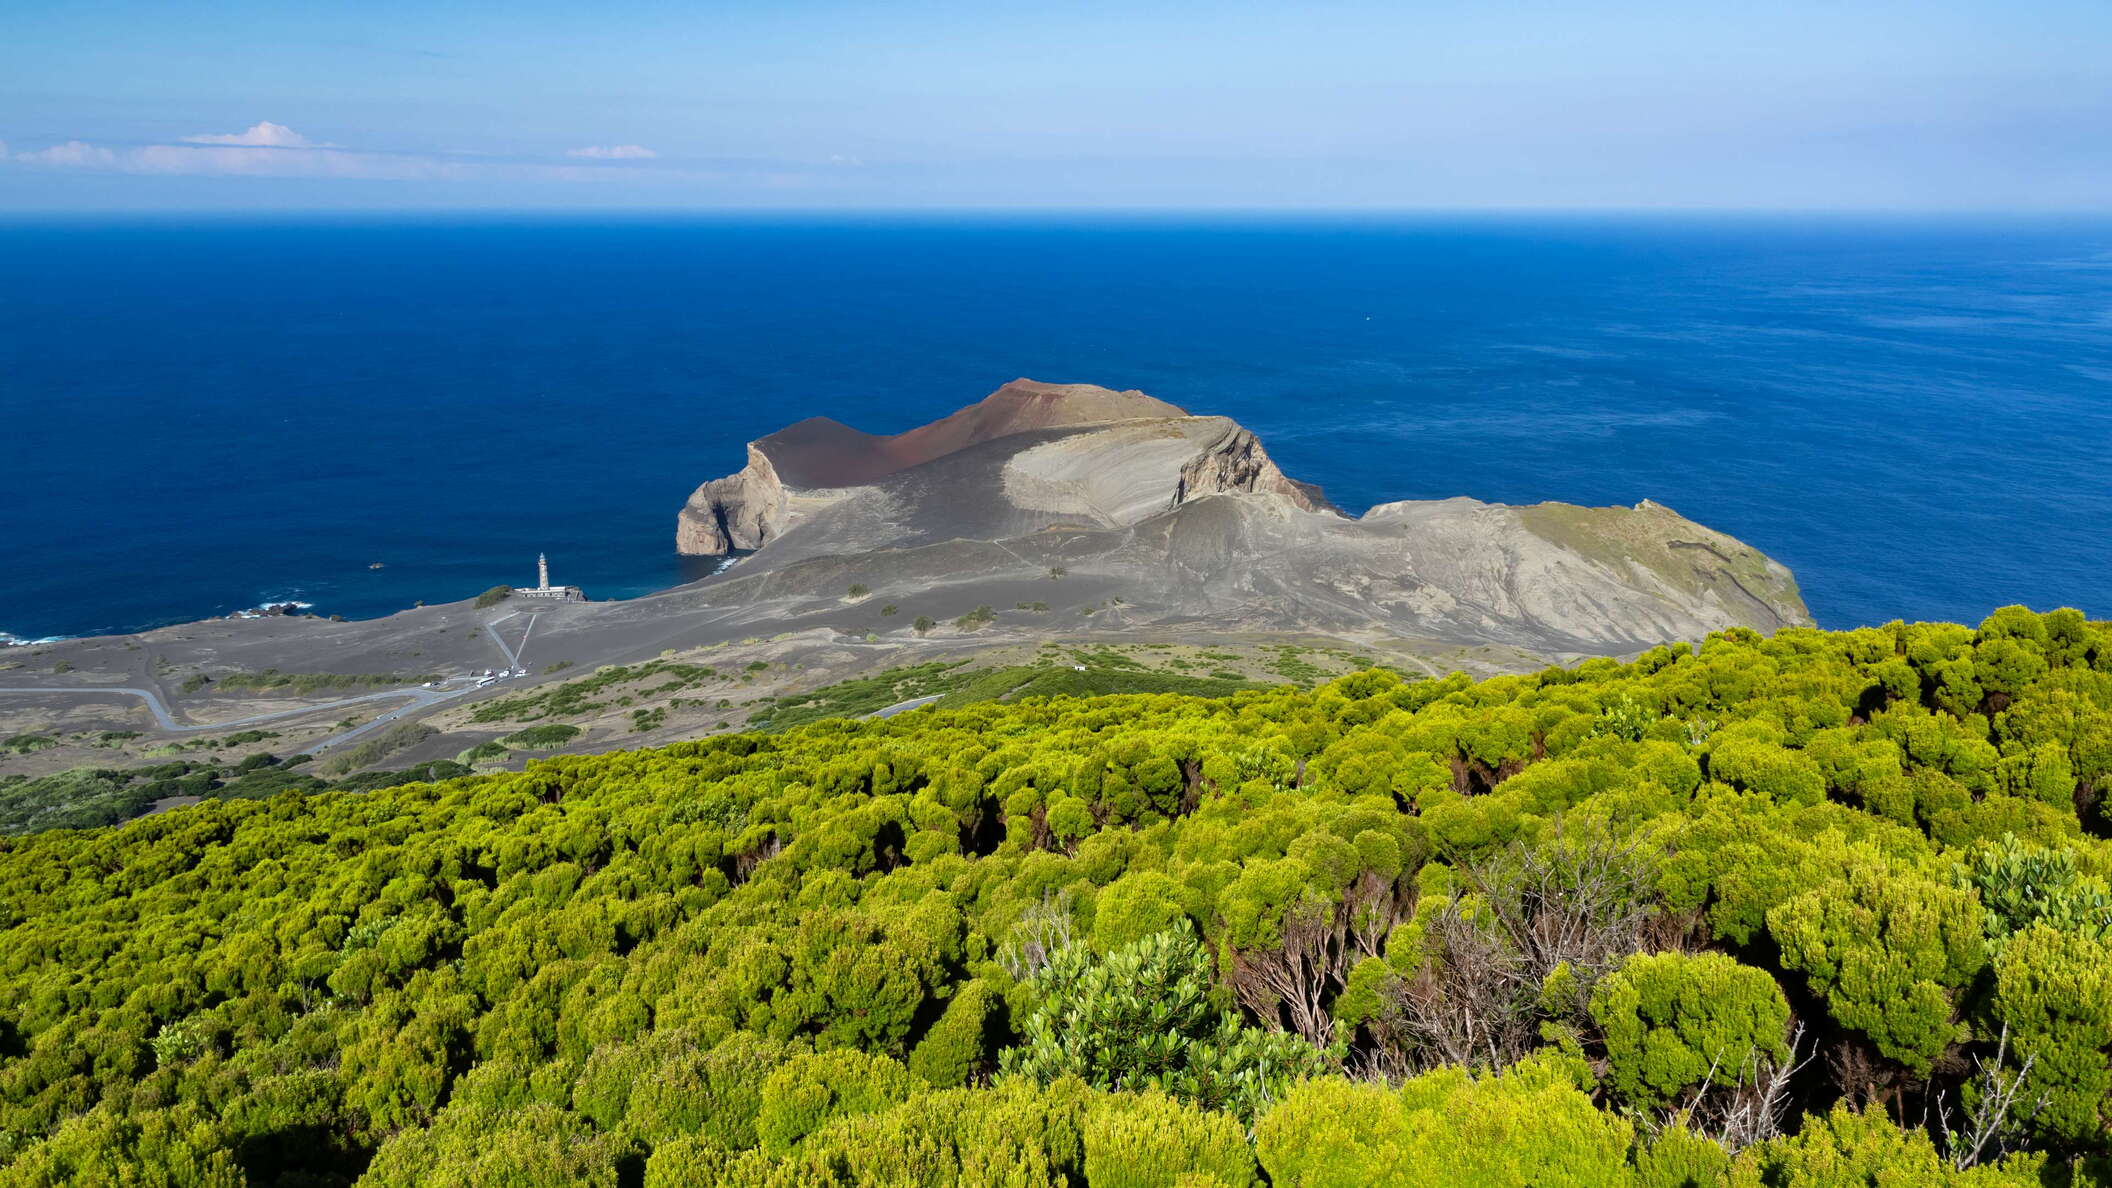 Capelo peninsula with Vulcão dos Capelinhos